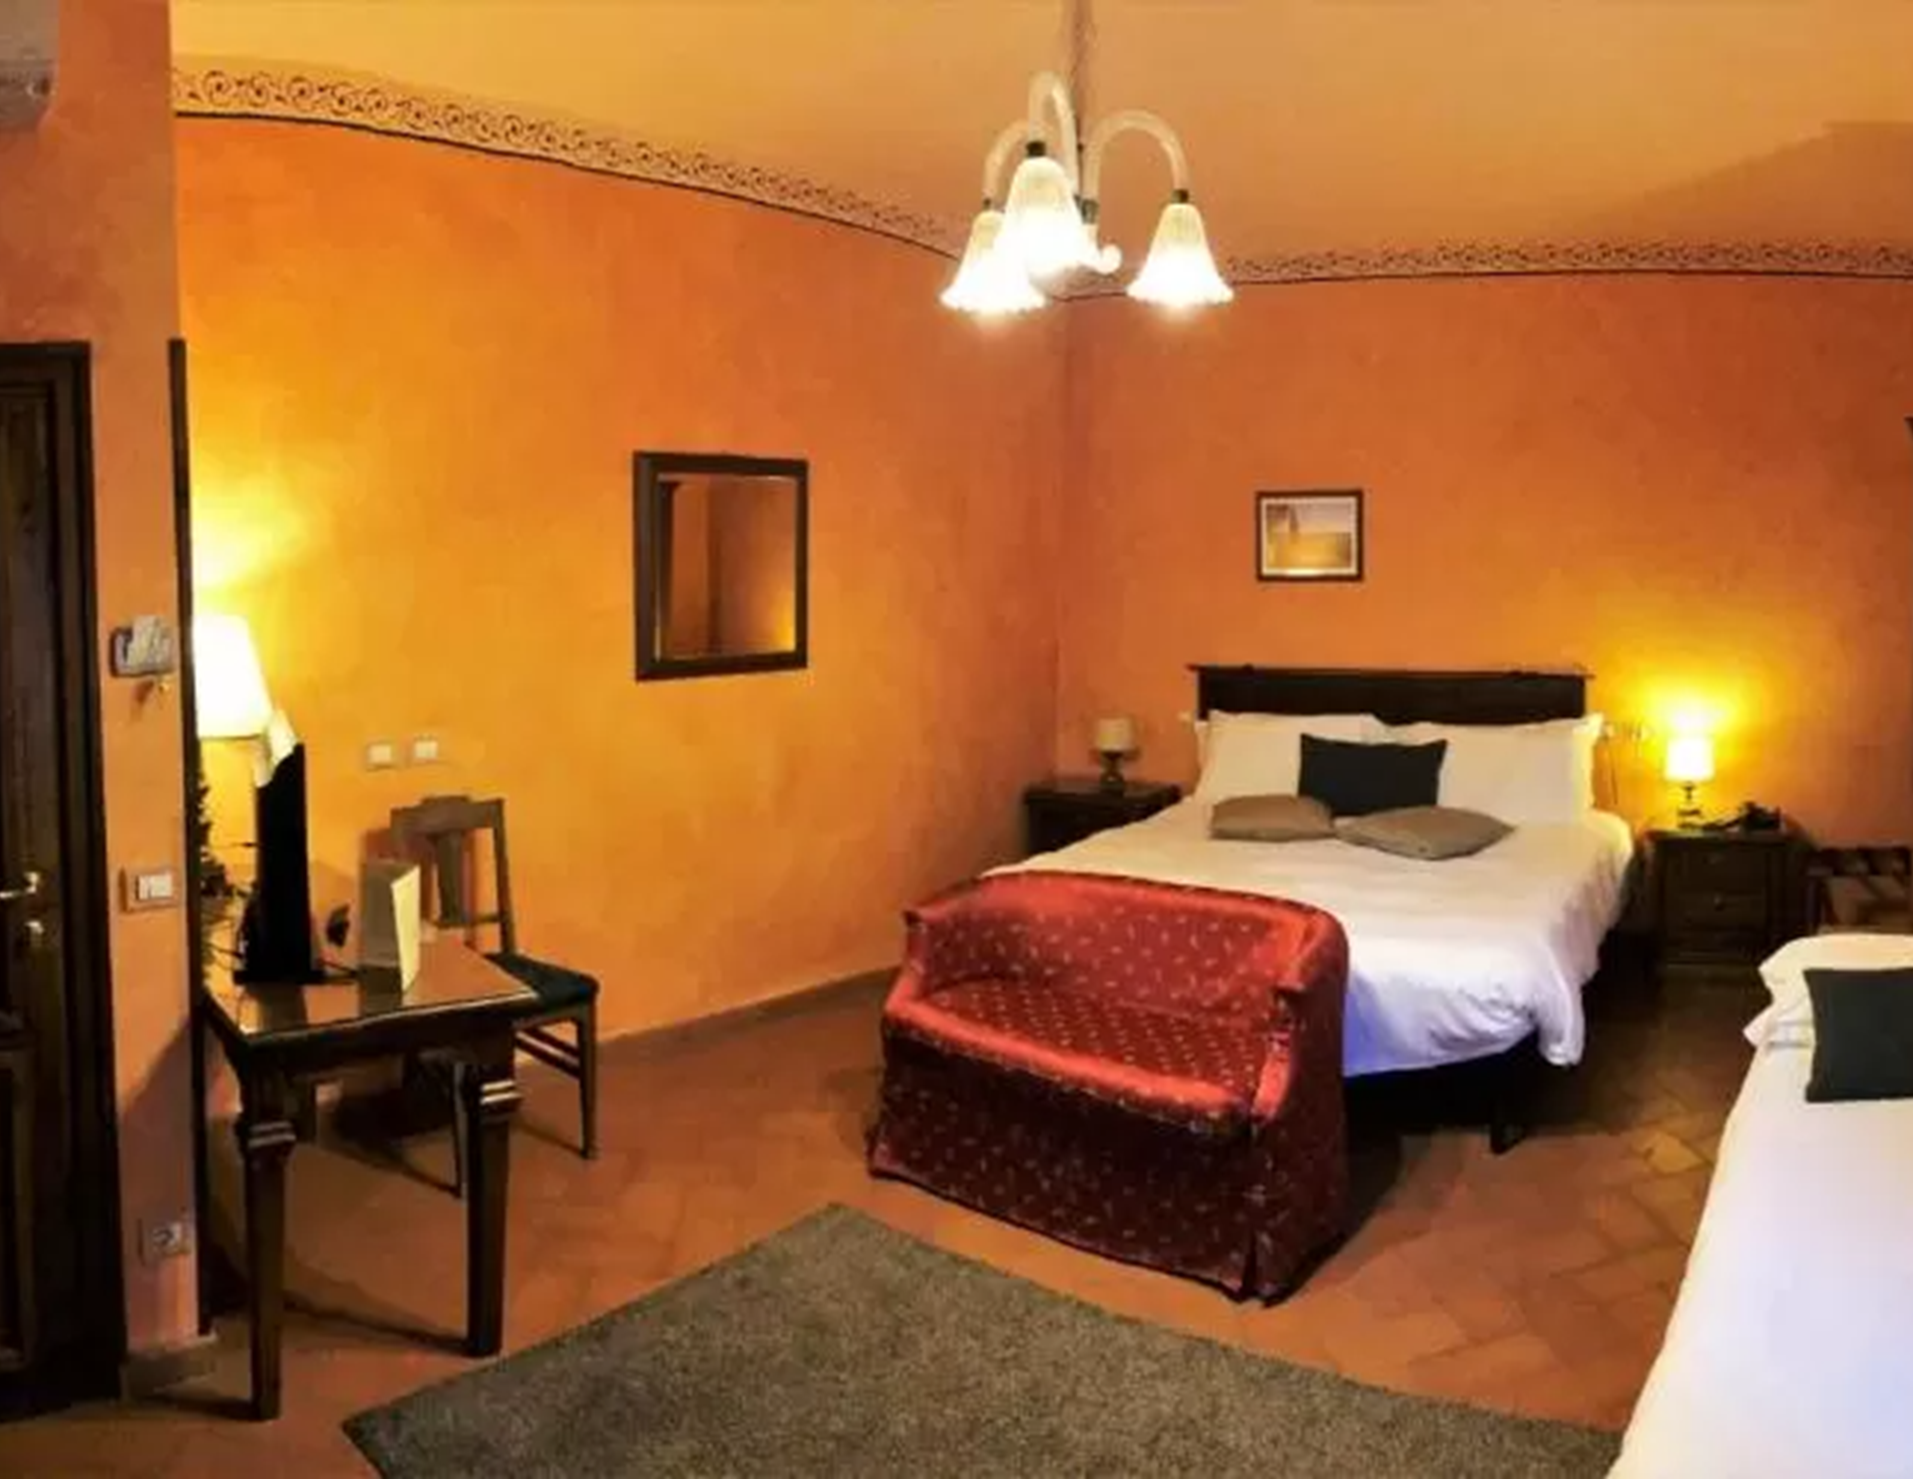 Hotel Bellavista - Room 3